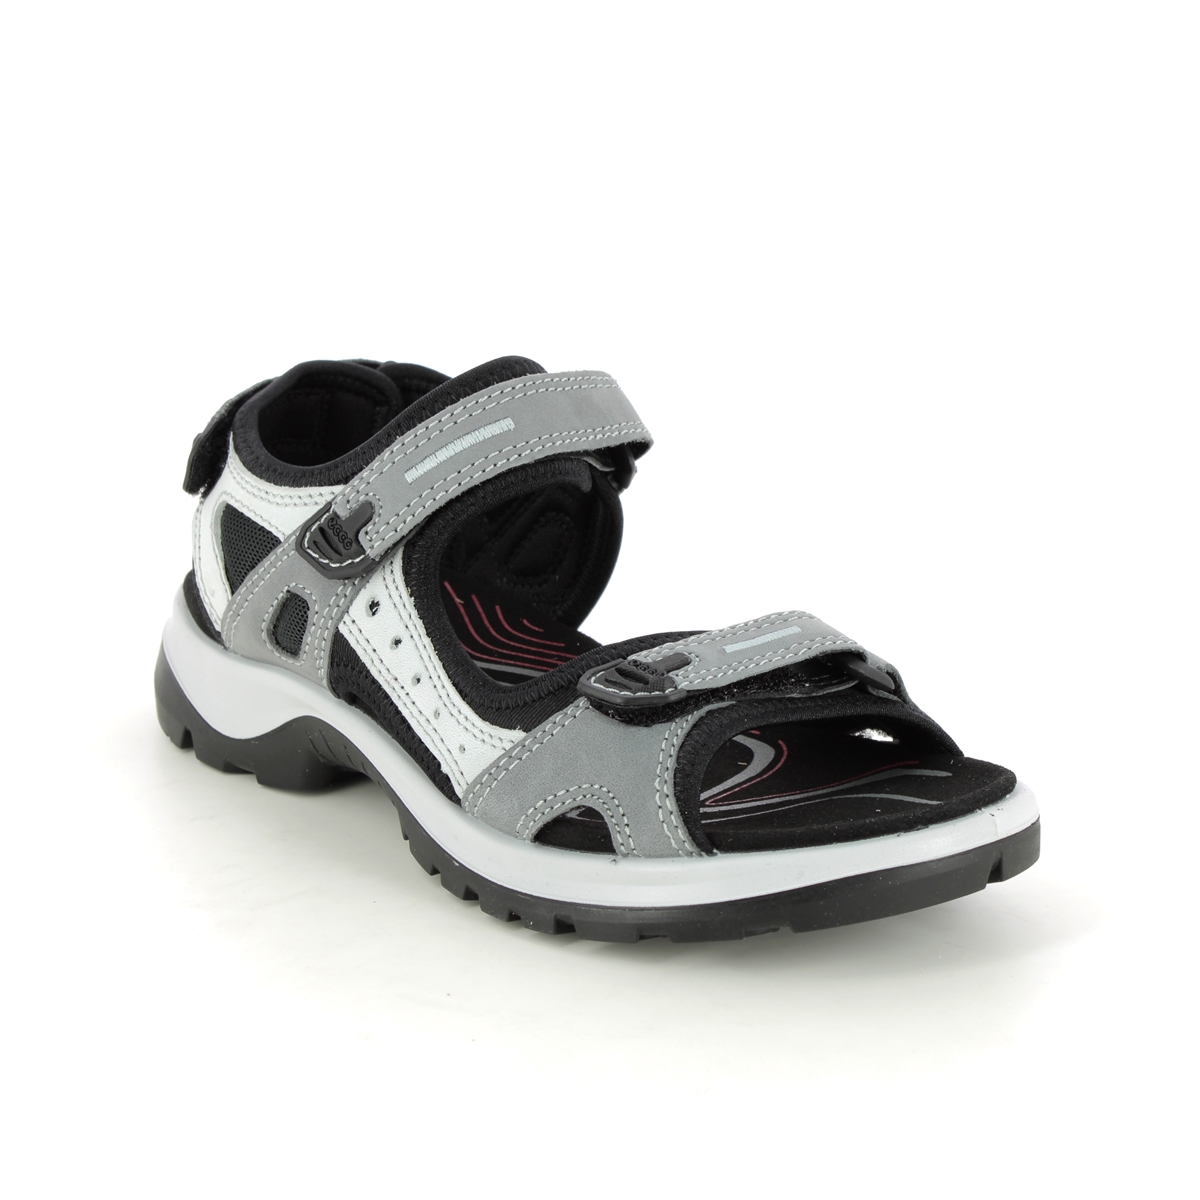 Ecco Offroad Lady Grey Nubuck Womens Walking Sandals 069563-02244 In Size 37 In Plain Grey Nubuck